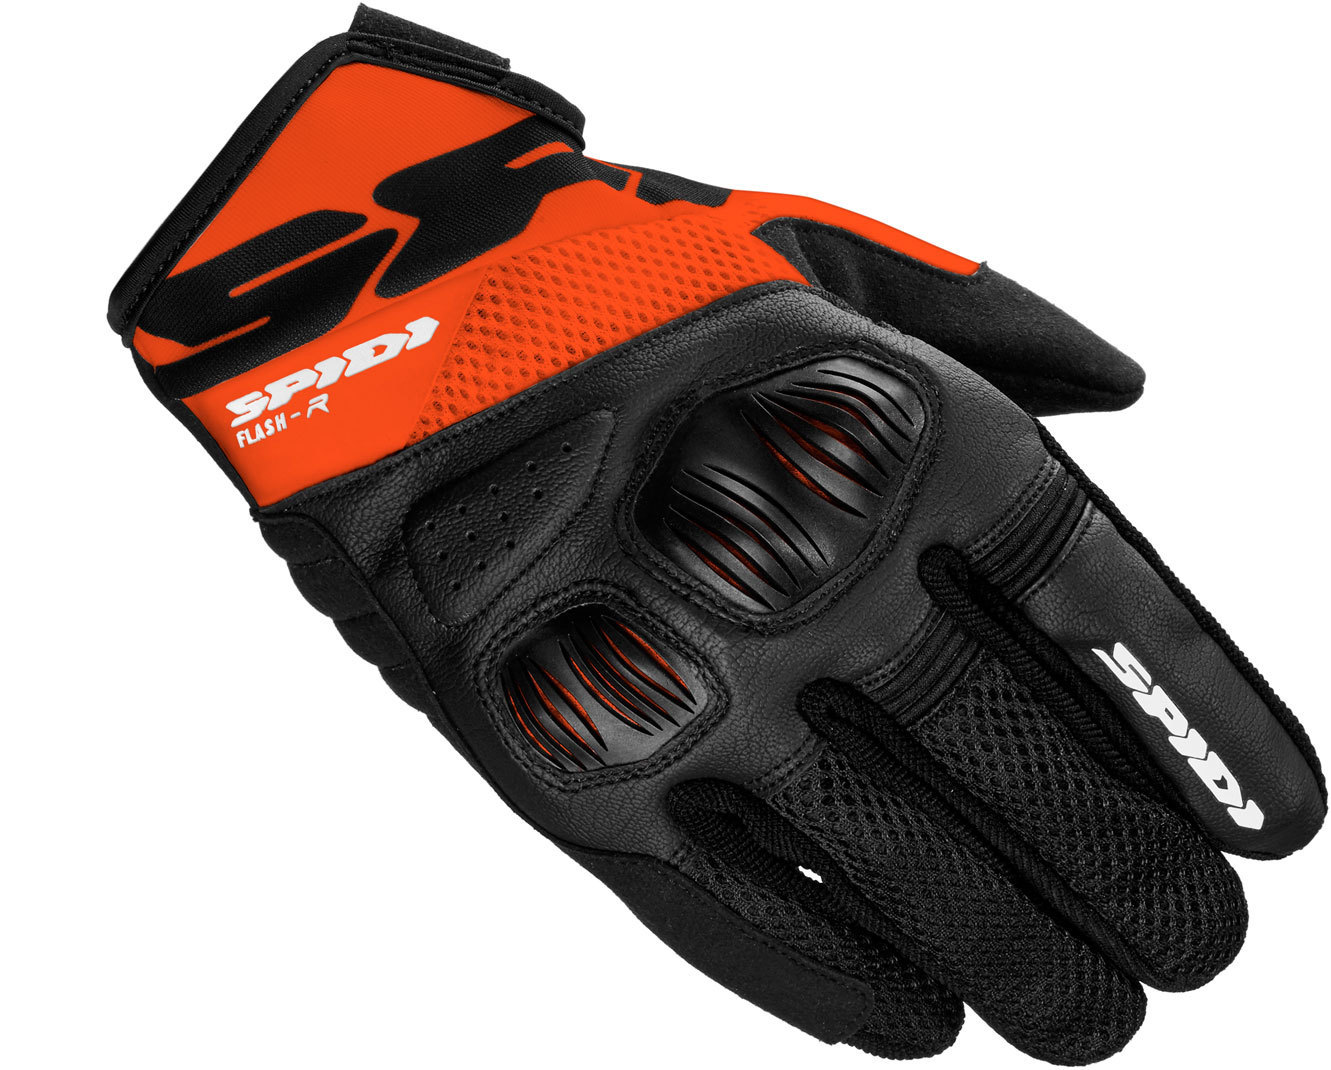 Spidi Flash-R Evo Handschuhe, schwarz-orange, Größe XL, schwarz-orange, Größe XL